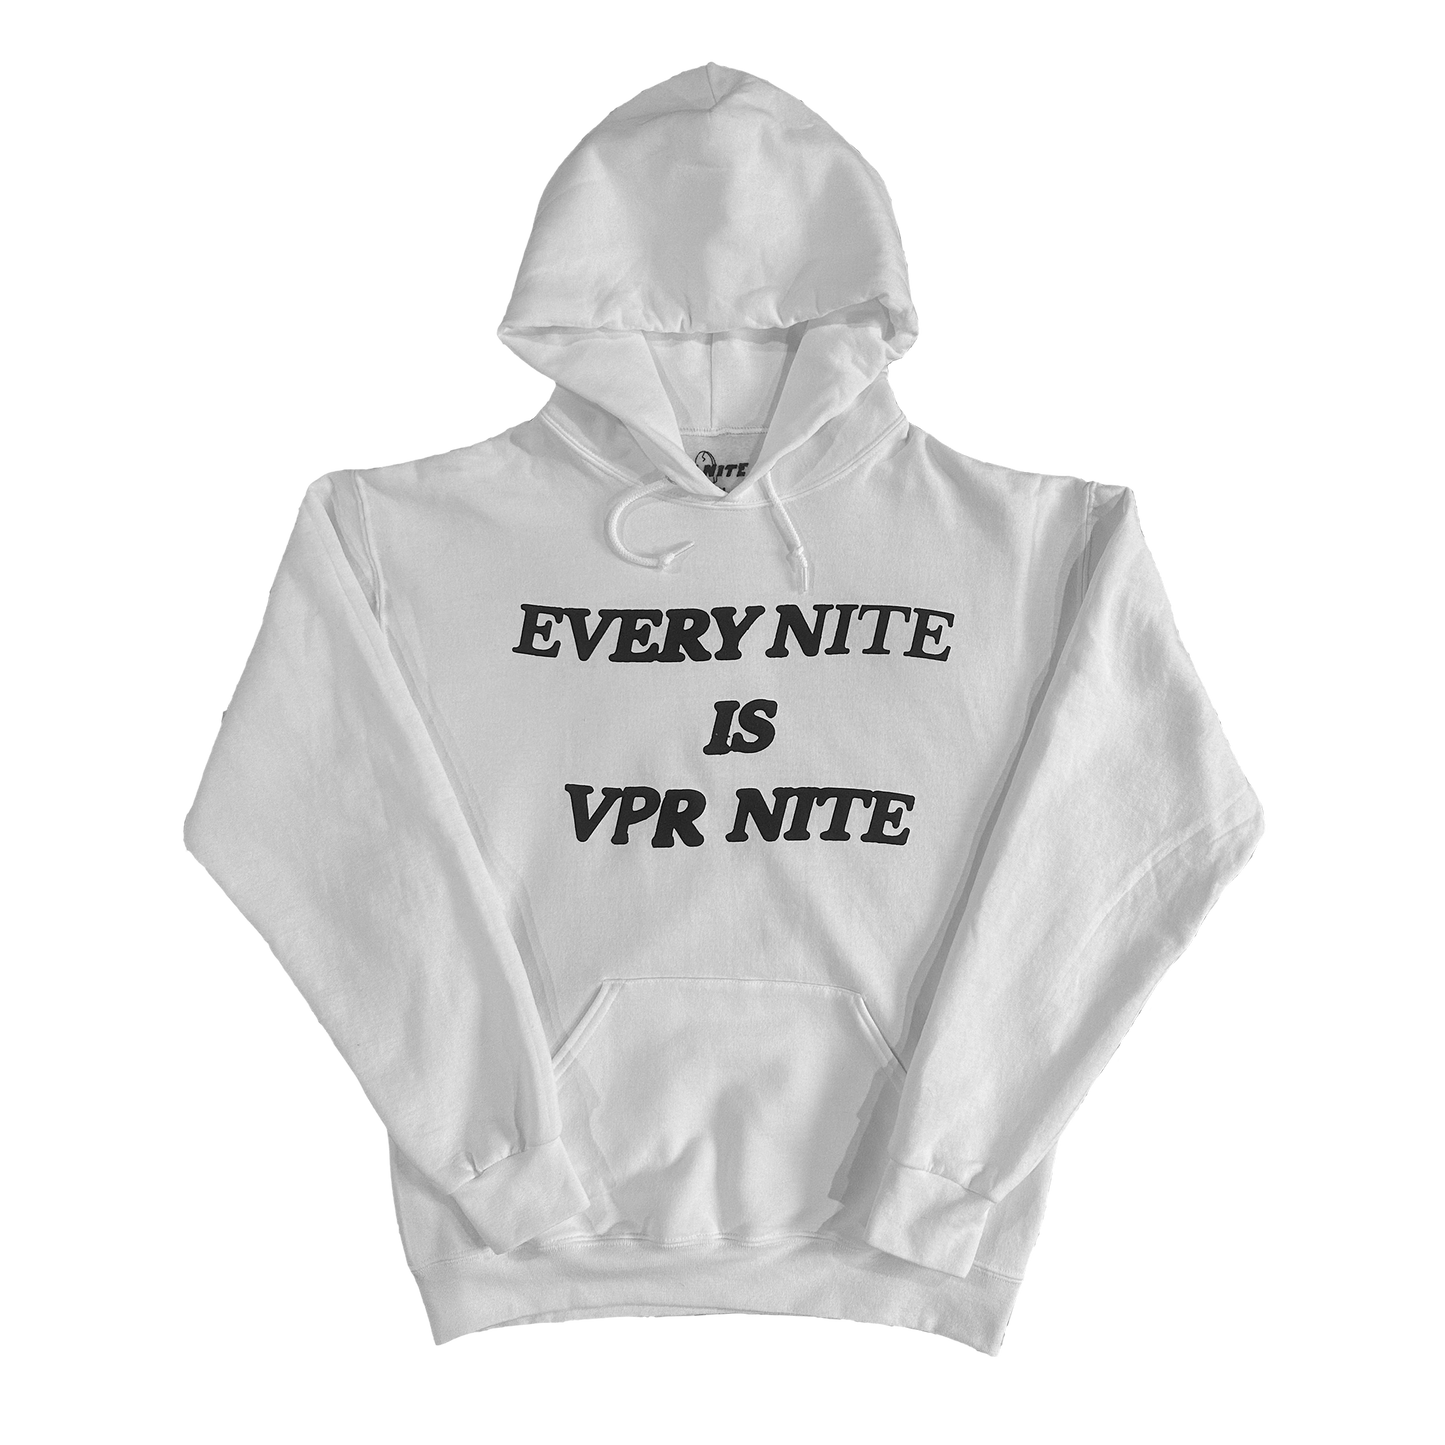 Every Nite is VPR Nite Hoodie - White